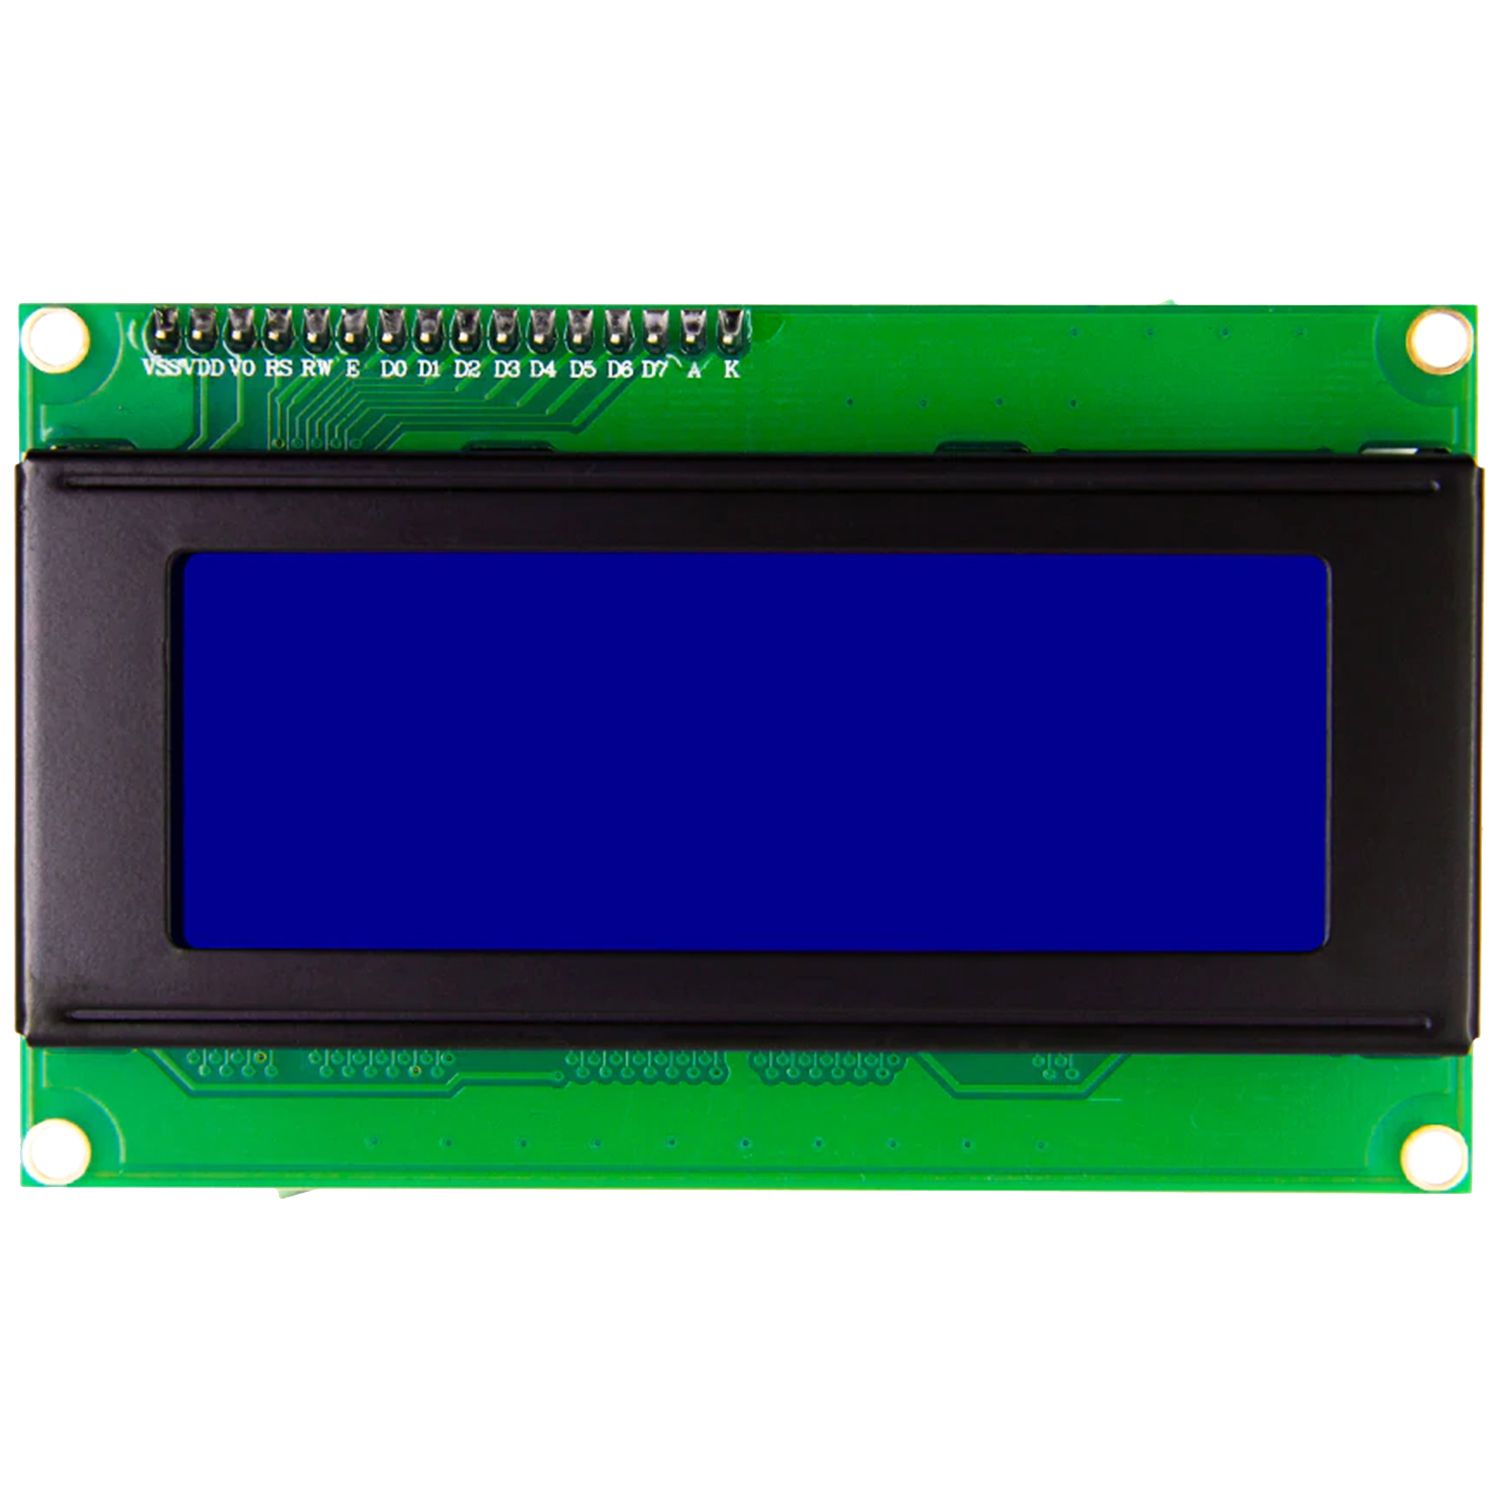 Основное фото LCD дисплей с синей подсветкой 2004 I2C в интернет - магазине RoboStore Arduino